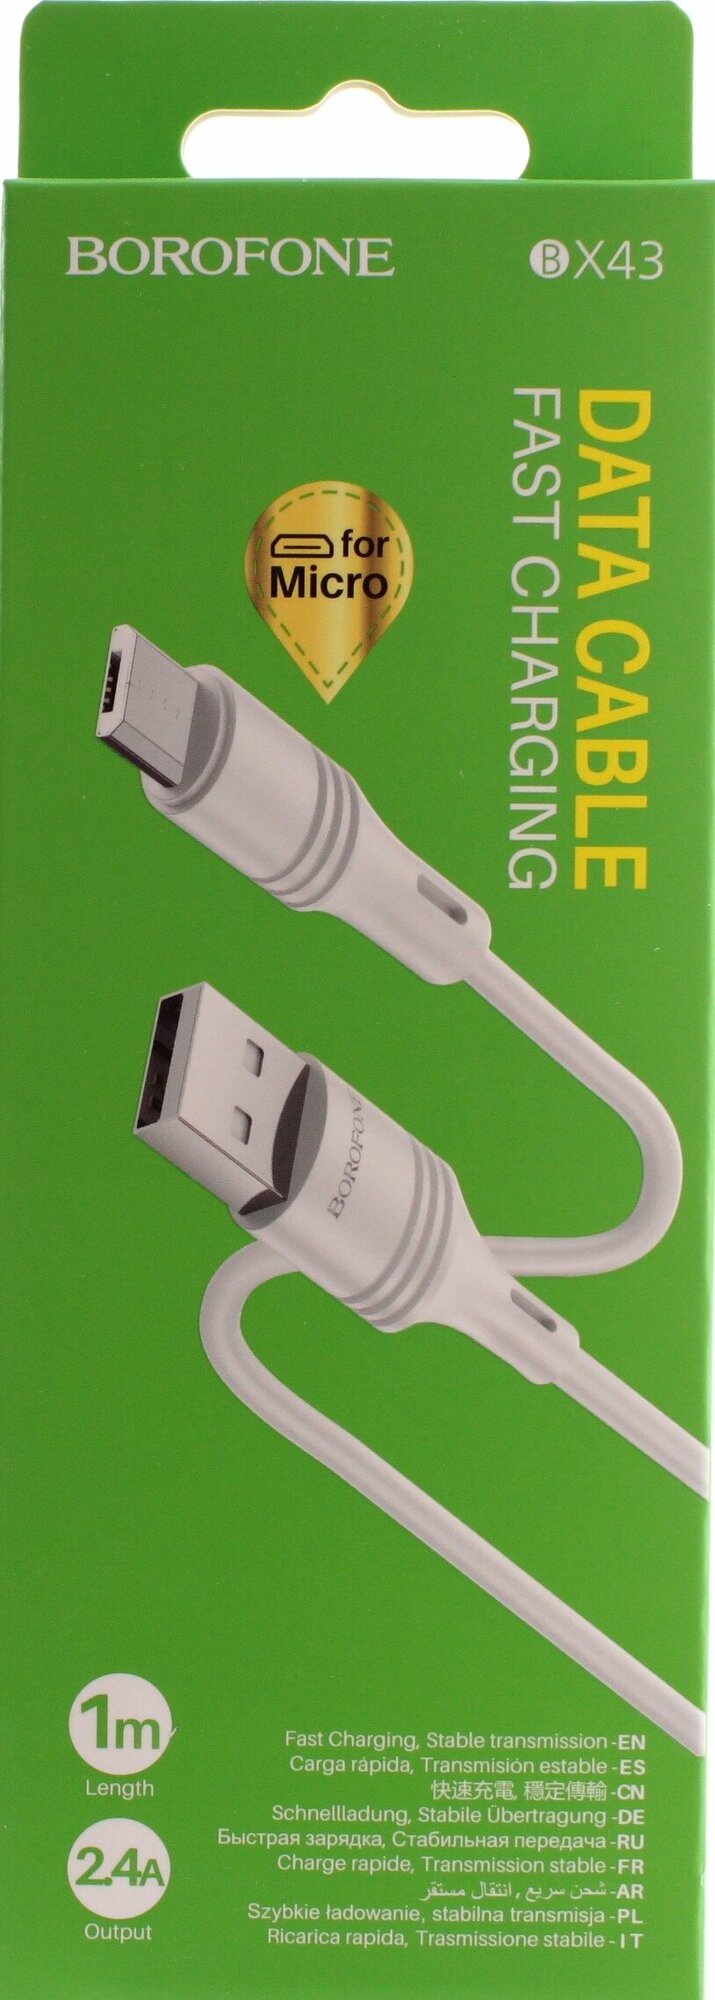 Кабель micro USB BOROFONE BX43, 1 м, 2A, PVC, Белый